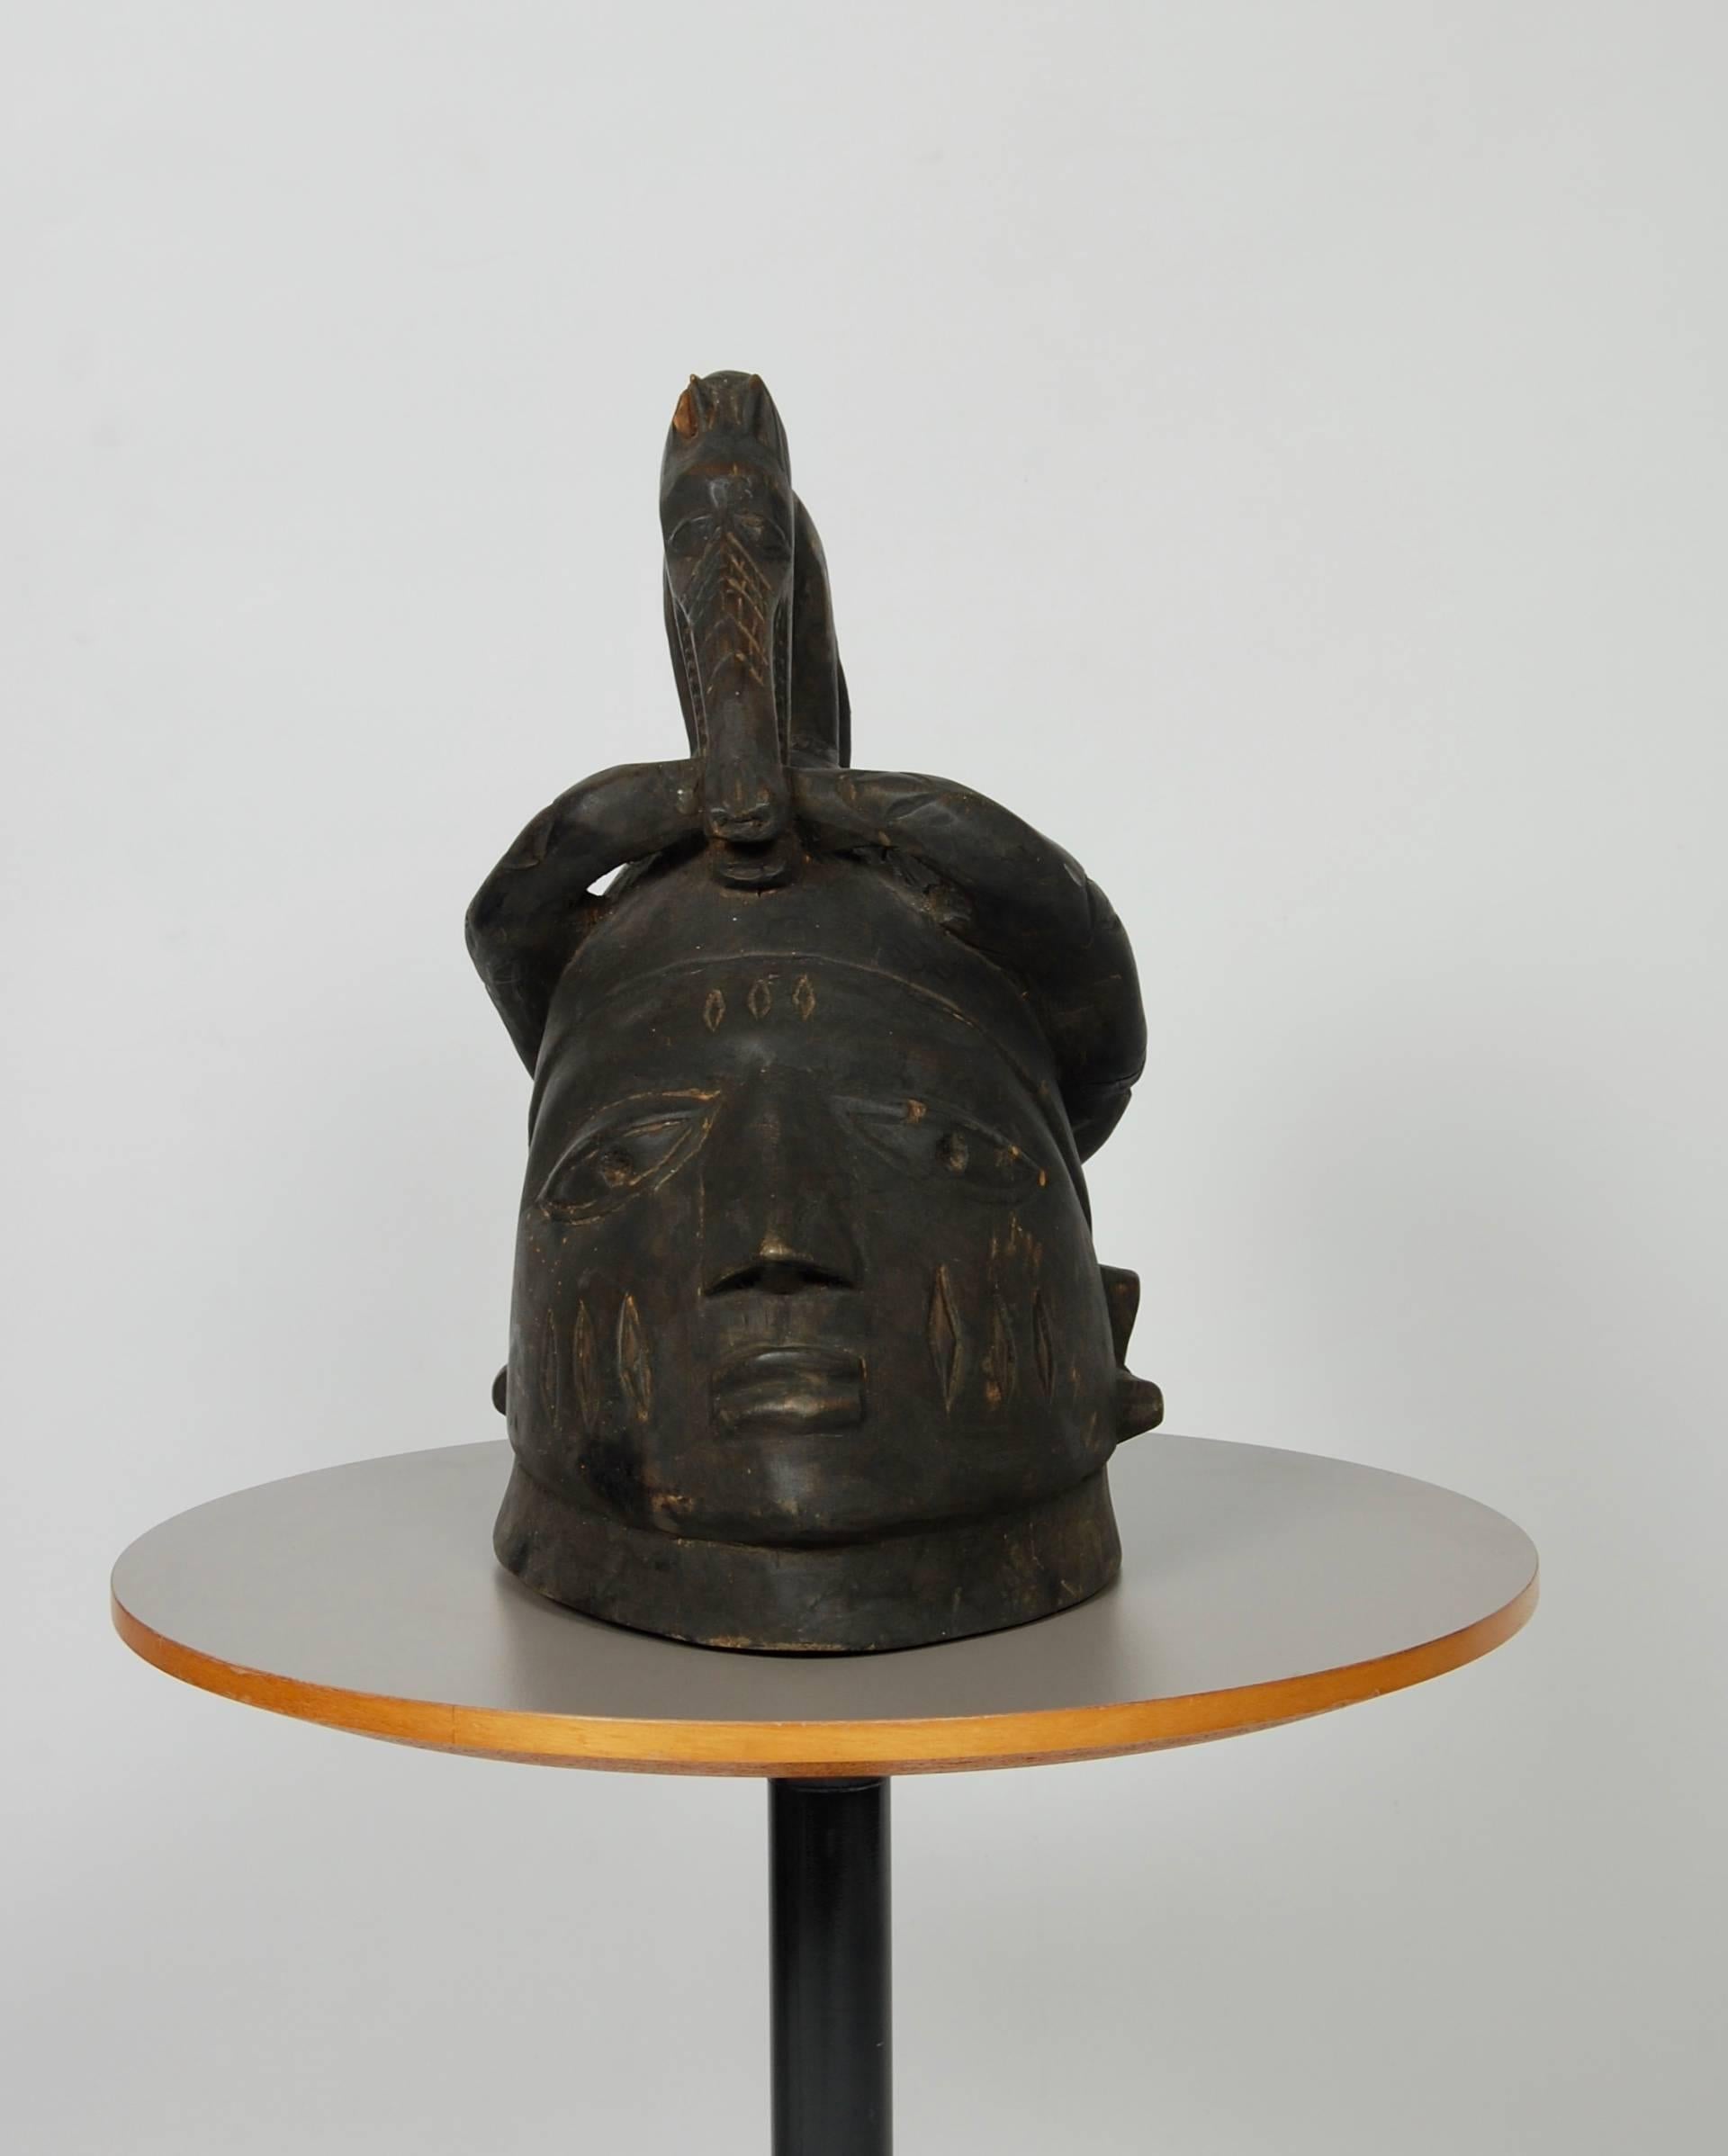 Masque casque en bois noirci (Gelede), grande tête humaine surmontée d'un chien mangeant un serpent qui s'enroule autour de la tête. Pas de perforation pour l'attachement au costume de Yoruba, Nigeria. Acheté en 1982 chez James R Lawson Pty.